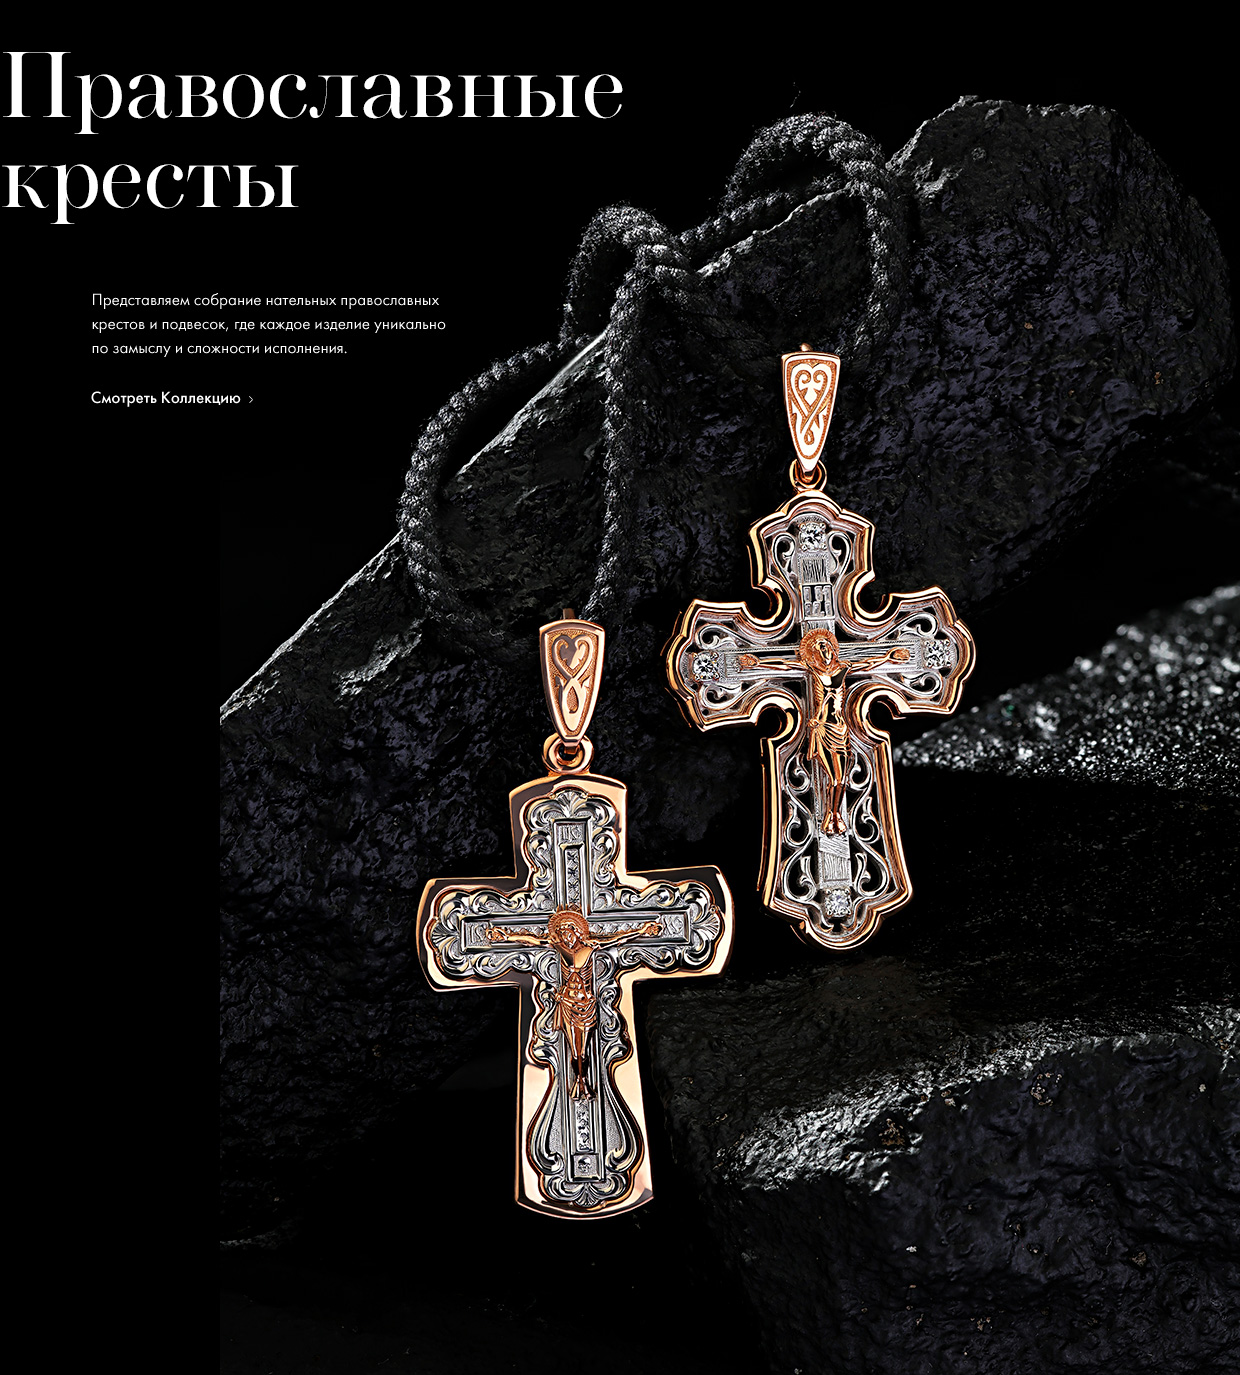 Православный Ювелирный Магазин Спб